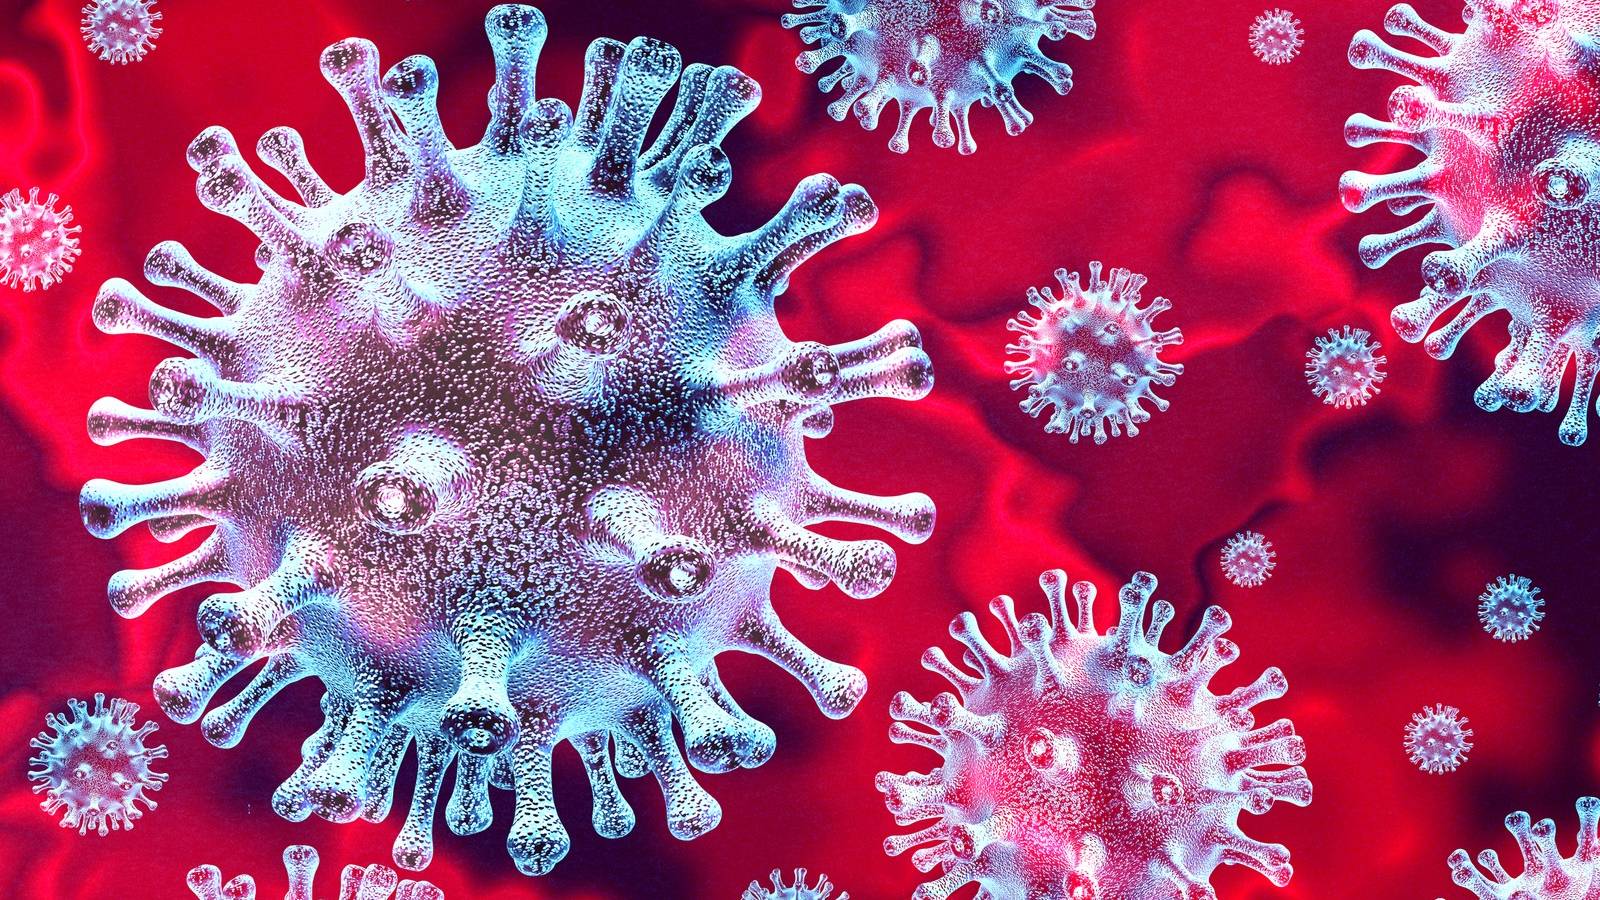 Coronavirus Rumänien dringende Anfrage